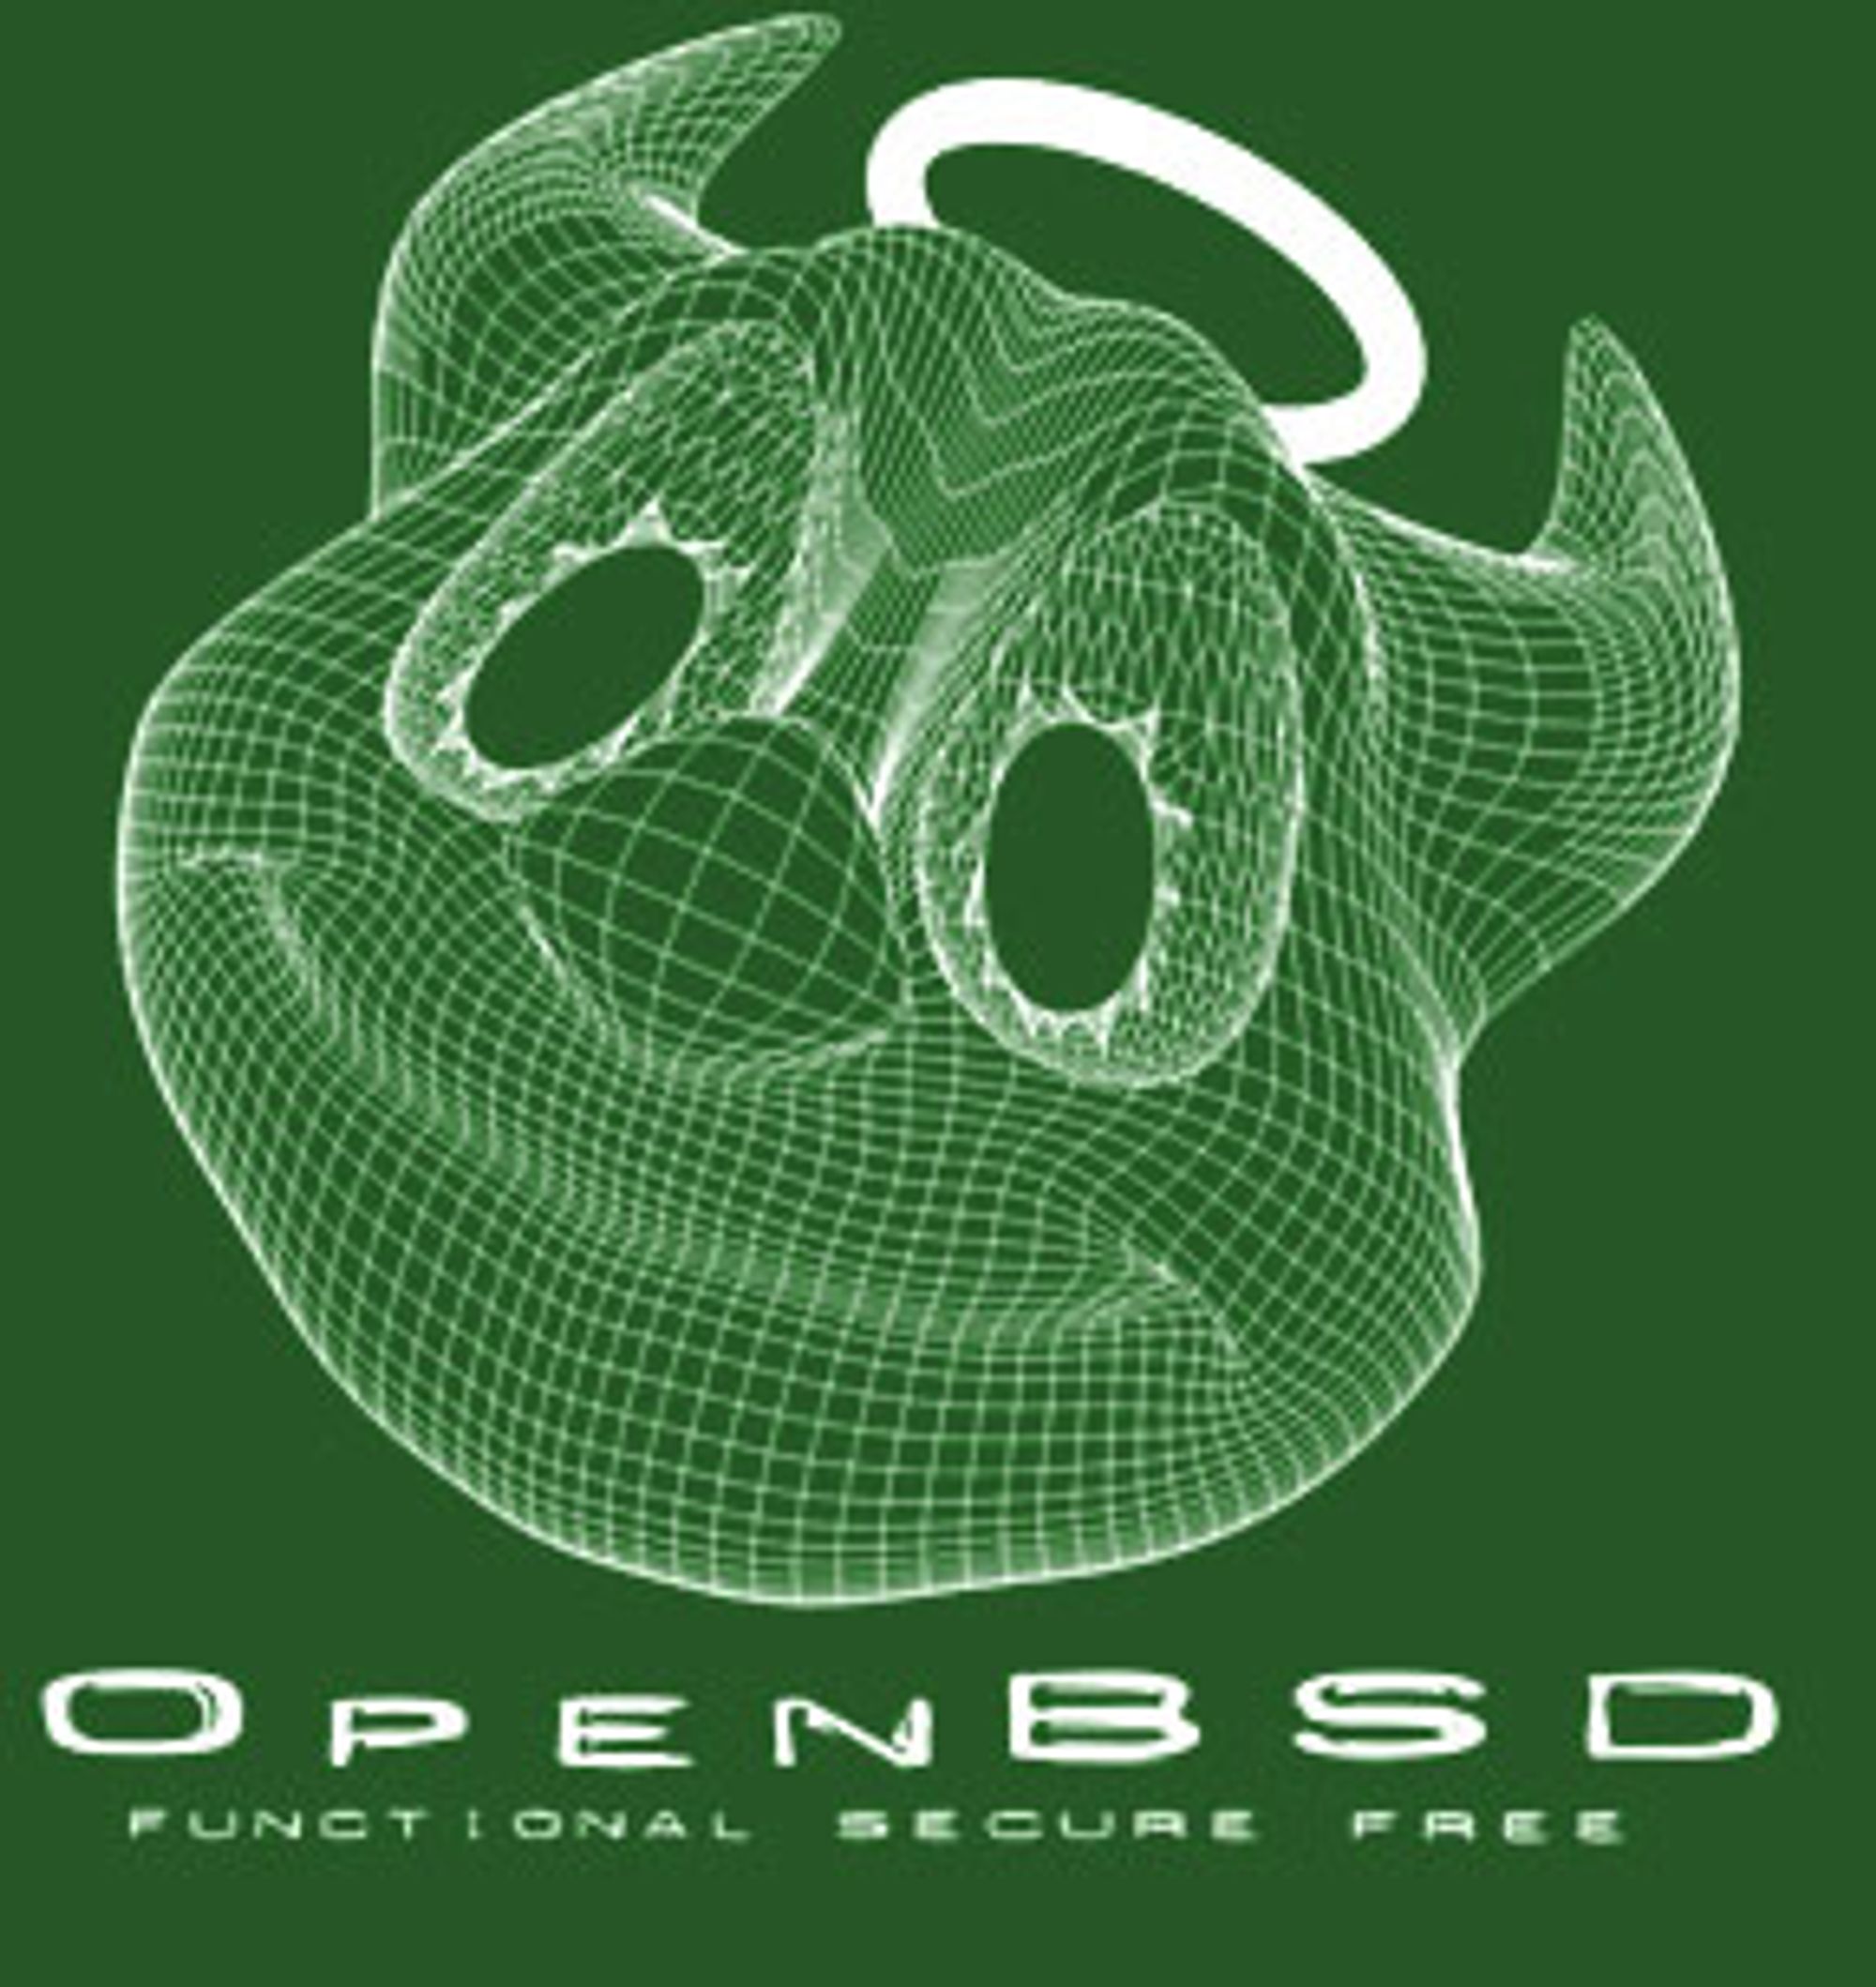 Det klassiske trådmodell-daemonhodet til OpenBSD.